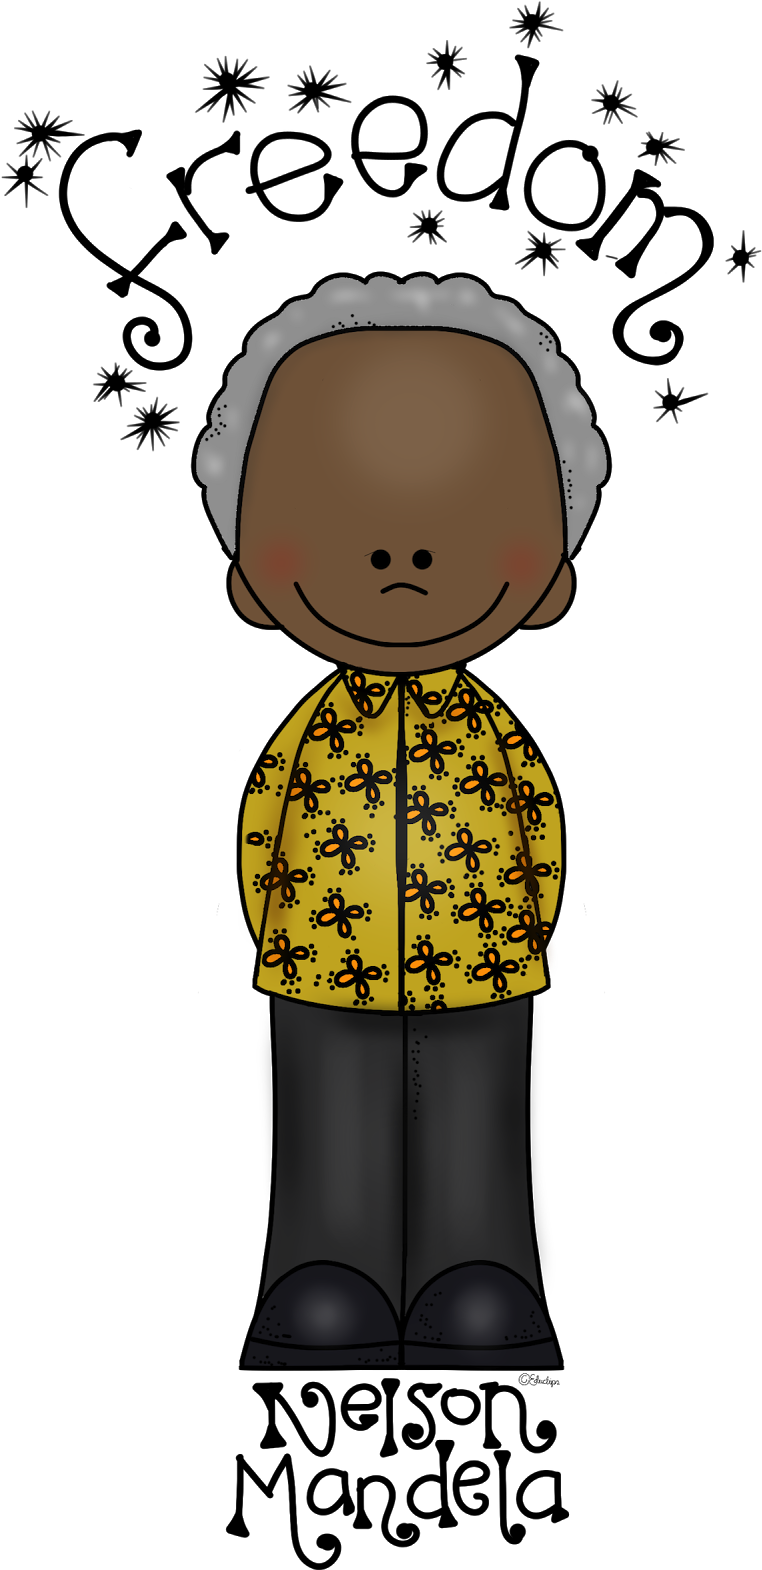 Nelson Mandela Cartoon Freedom Illustration PNG